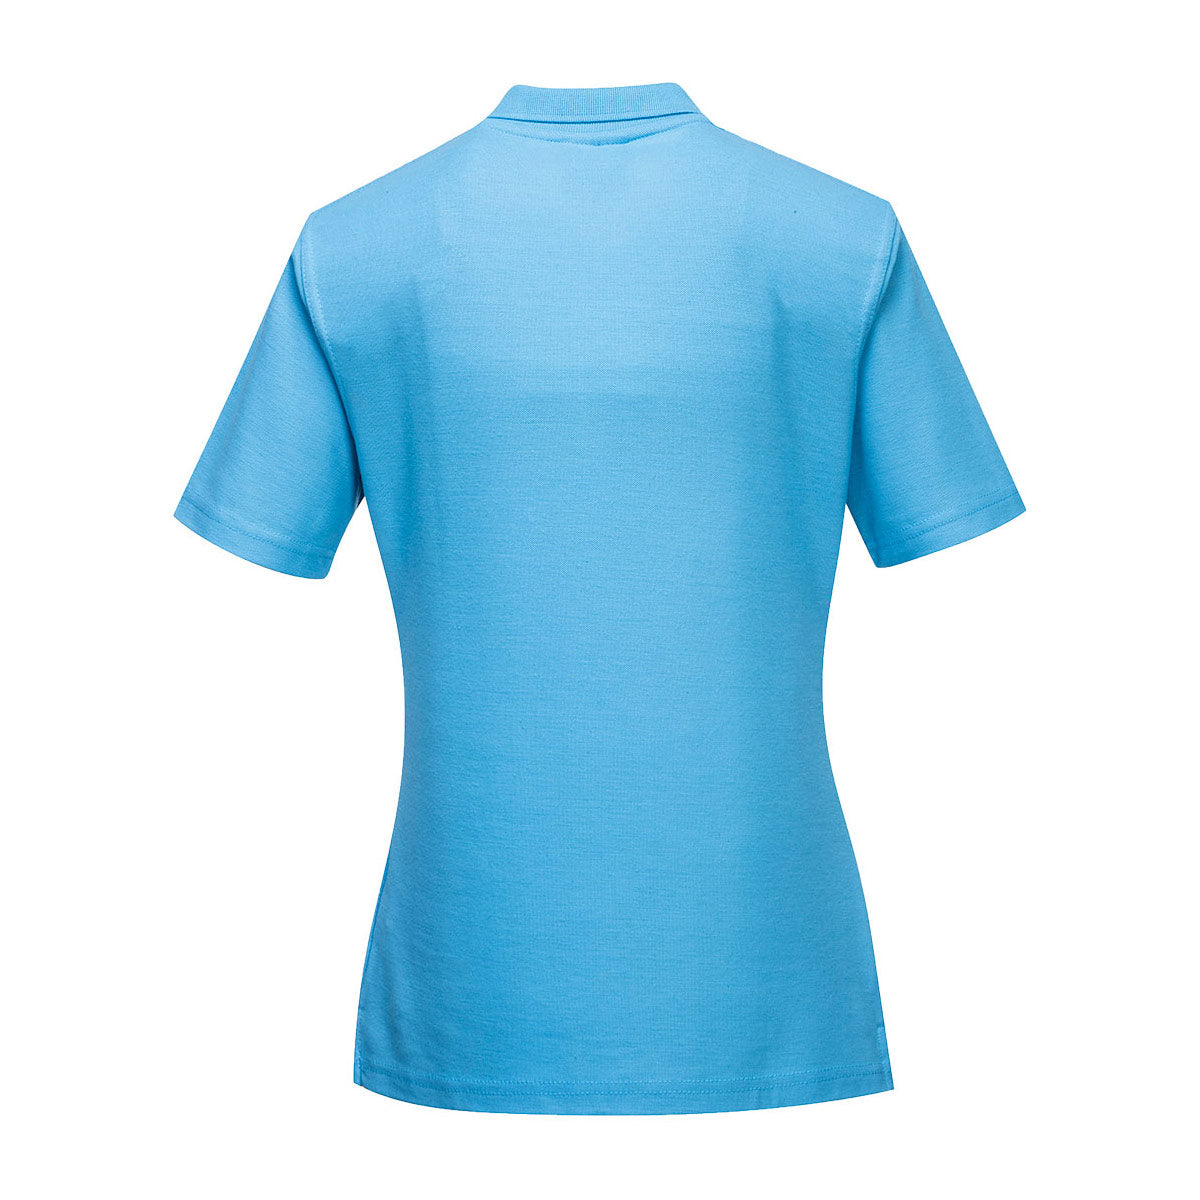 Poloshirt til damer - Himmelblå - Størrelse: L